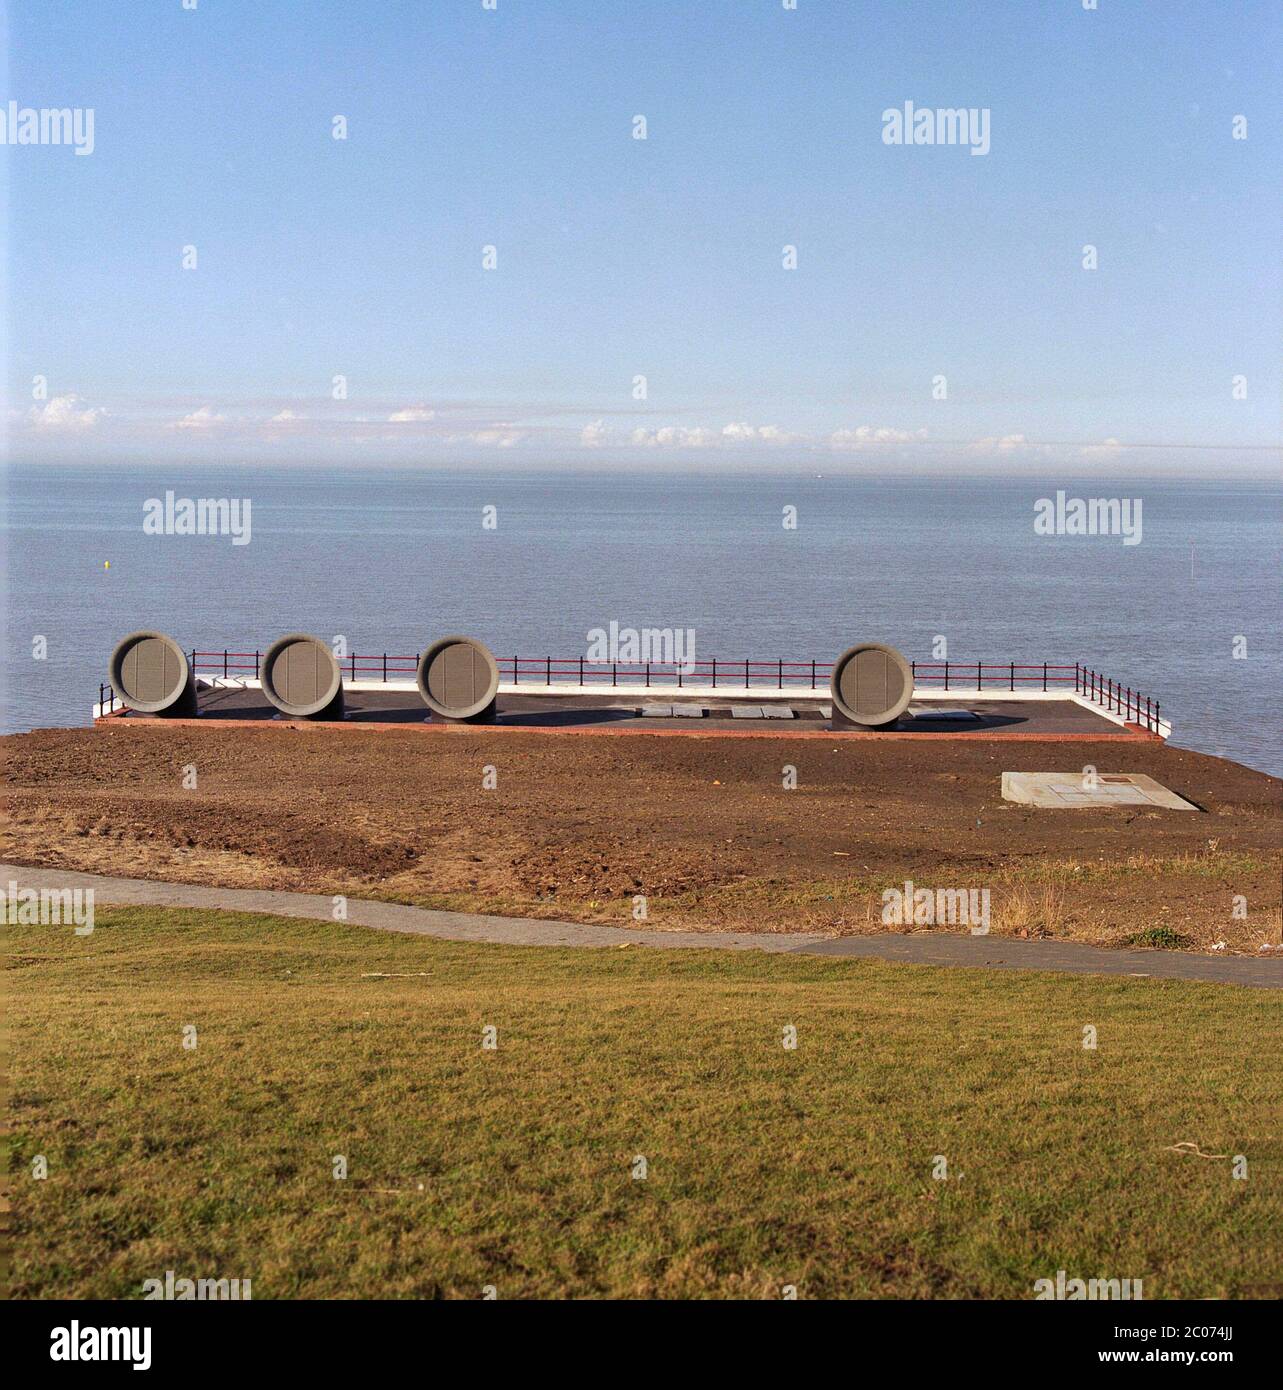 1996, recentemente aperto impianti di trattamento delle acque, Herne Bay, Kent, Inghilterra sudorientale, Regno Unito, con ventilatori circolari a forma di tromba. Foto Stock